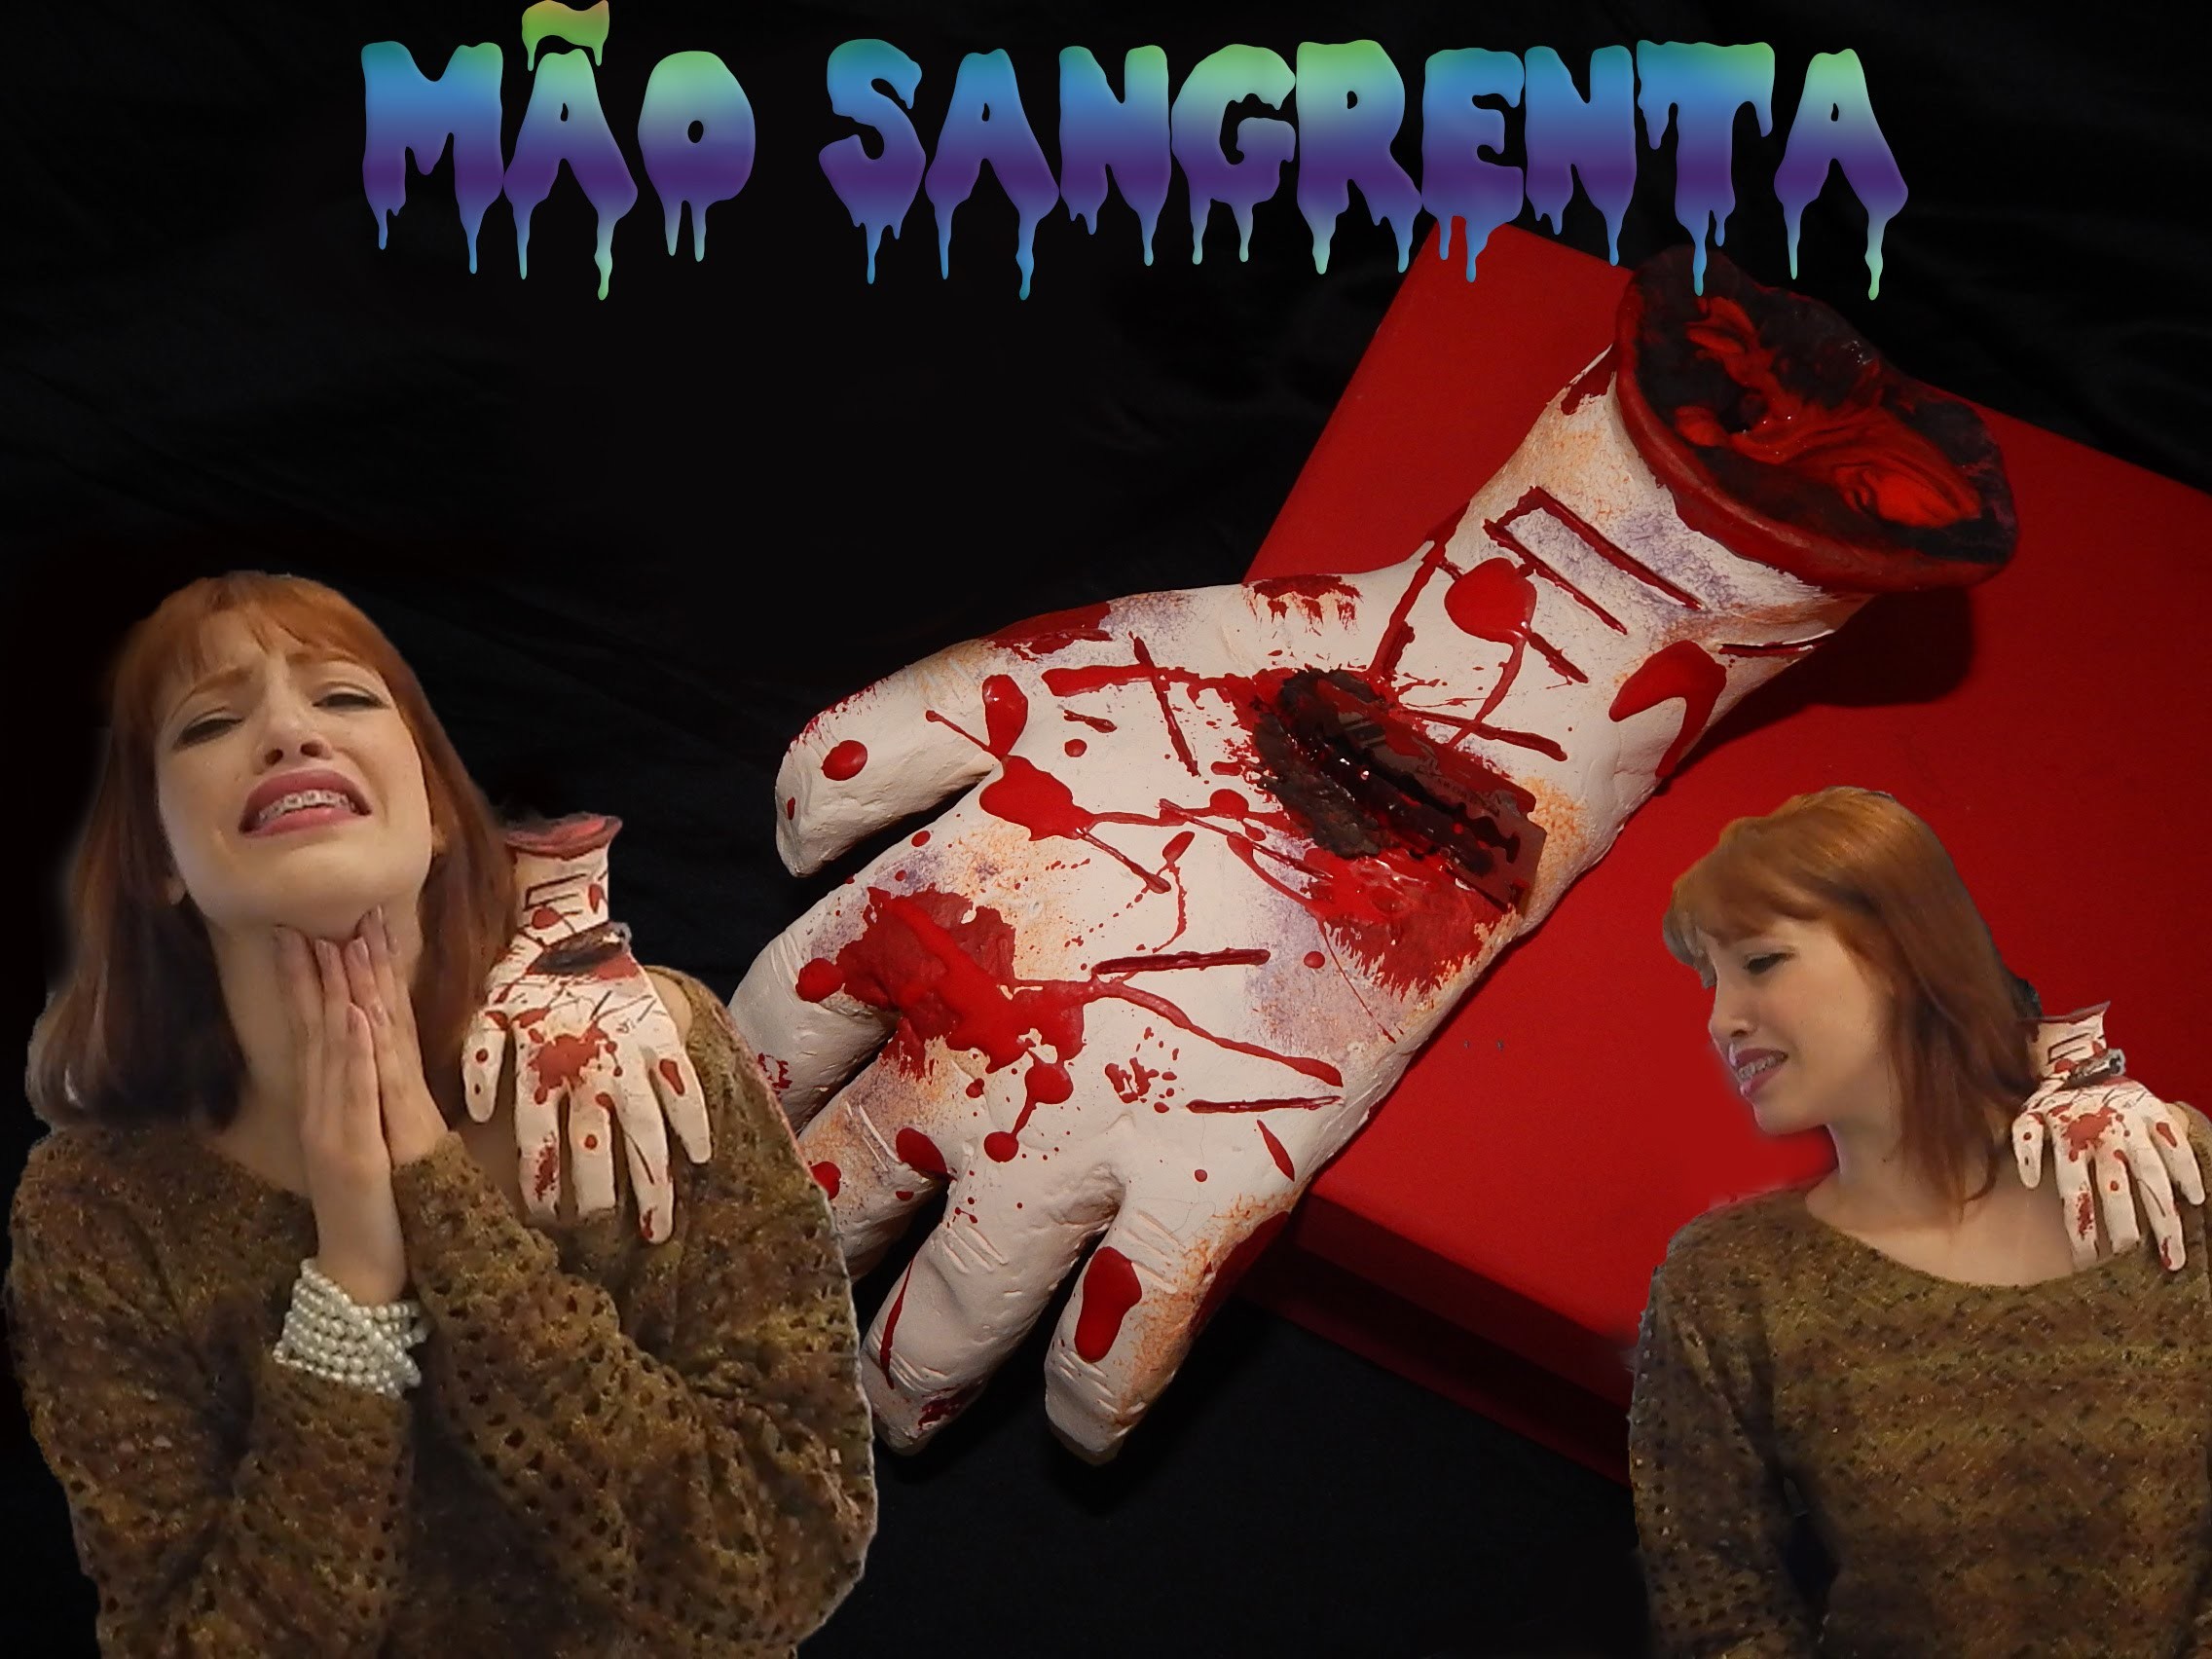 DIY HALLOWEEN - Mão Sangrenta. LACA DURA